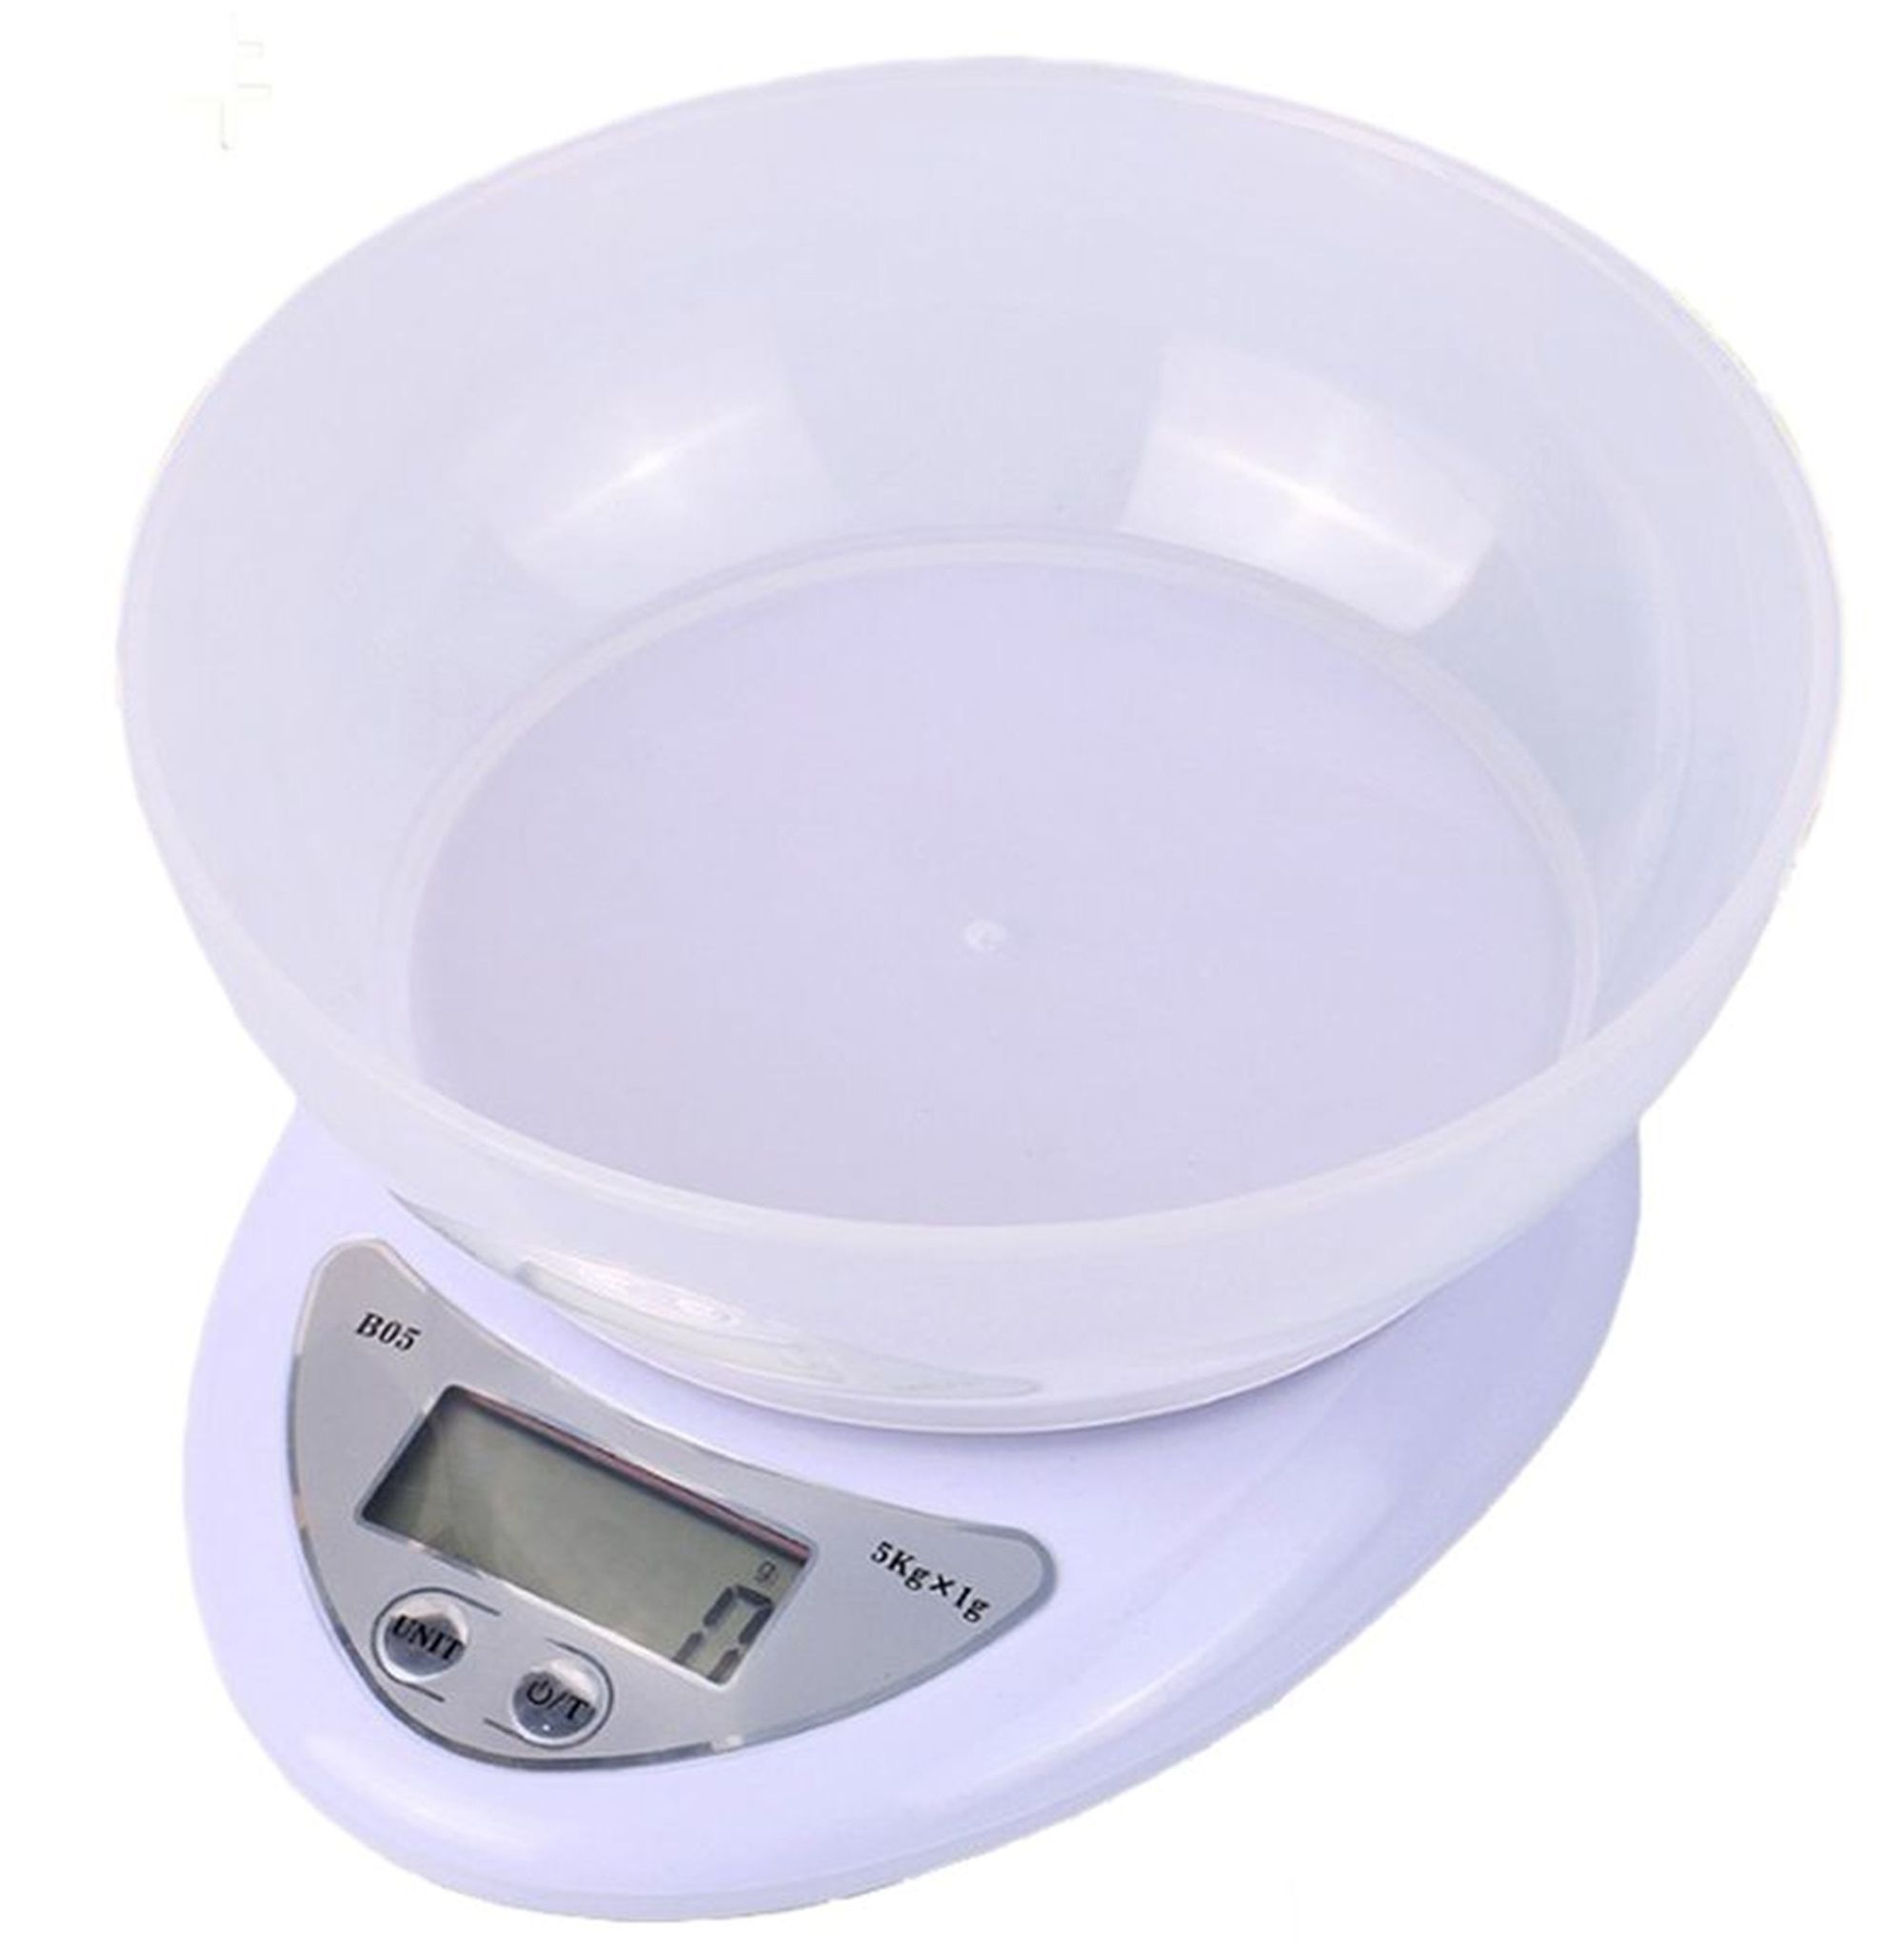 Balança Digital para Cozinha de 1kg a 5kg - Branca - 81488 - YDTECH